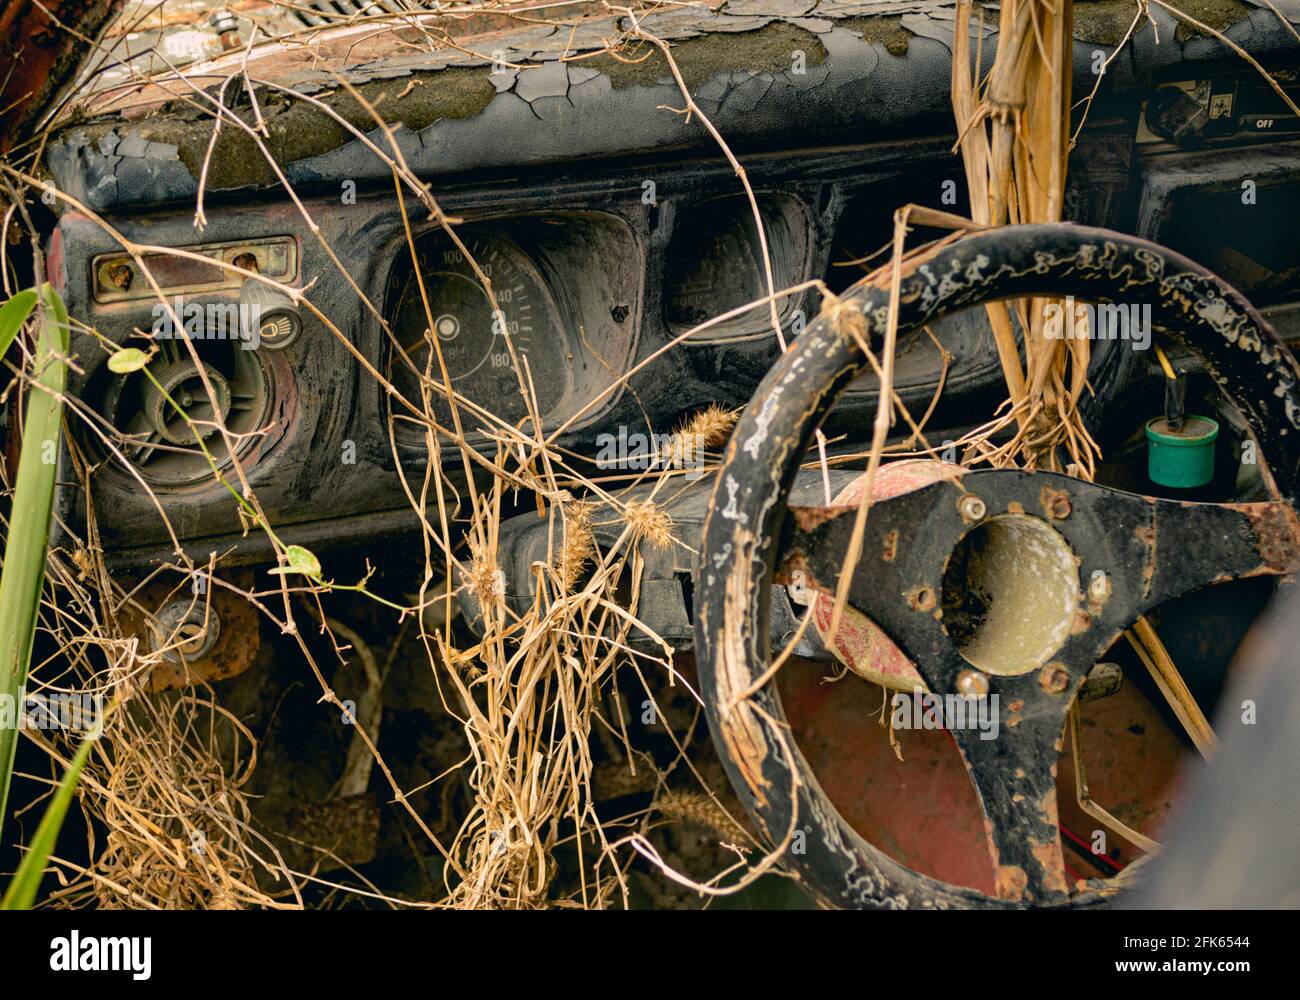 Abandonado coche naufragado sobrecrecido con plantas Foto de stock